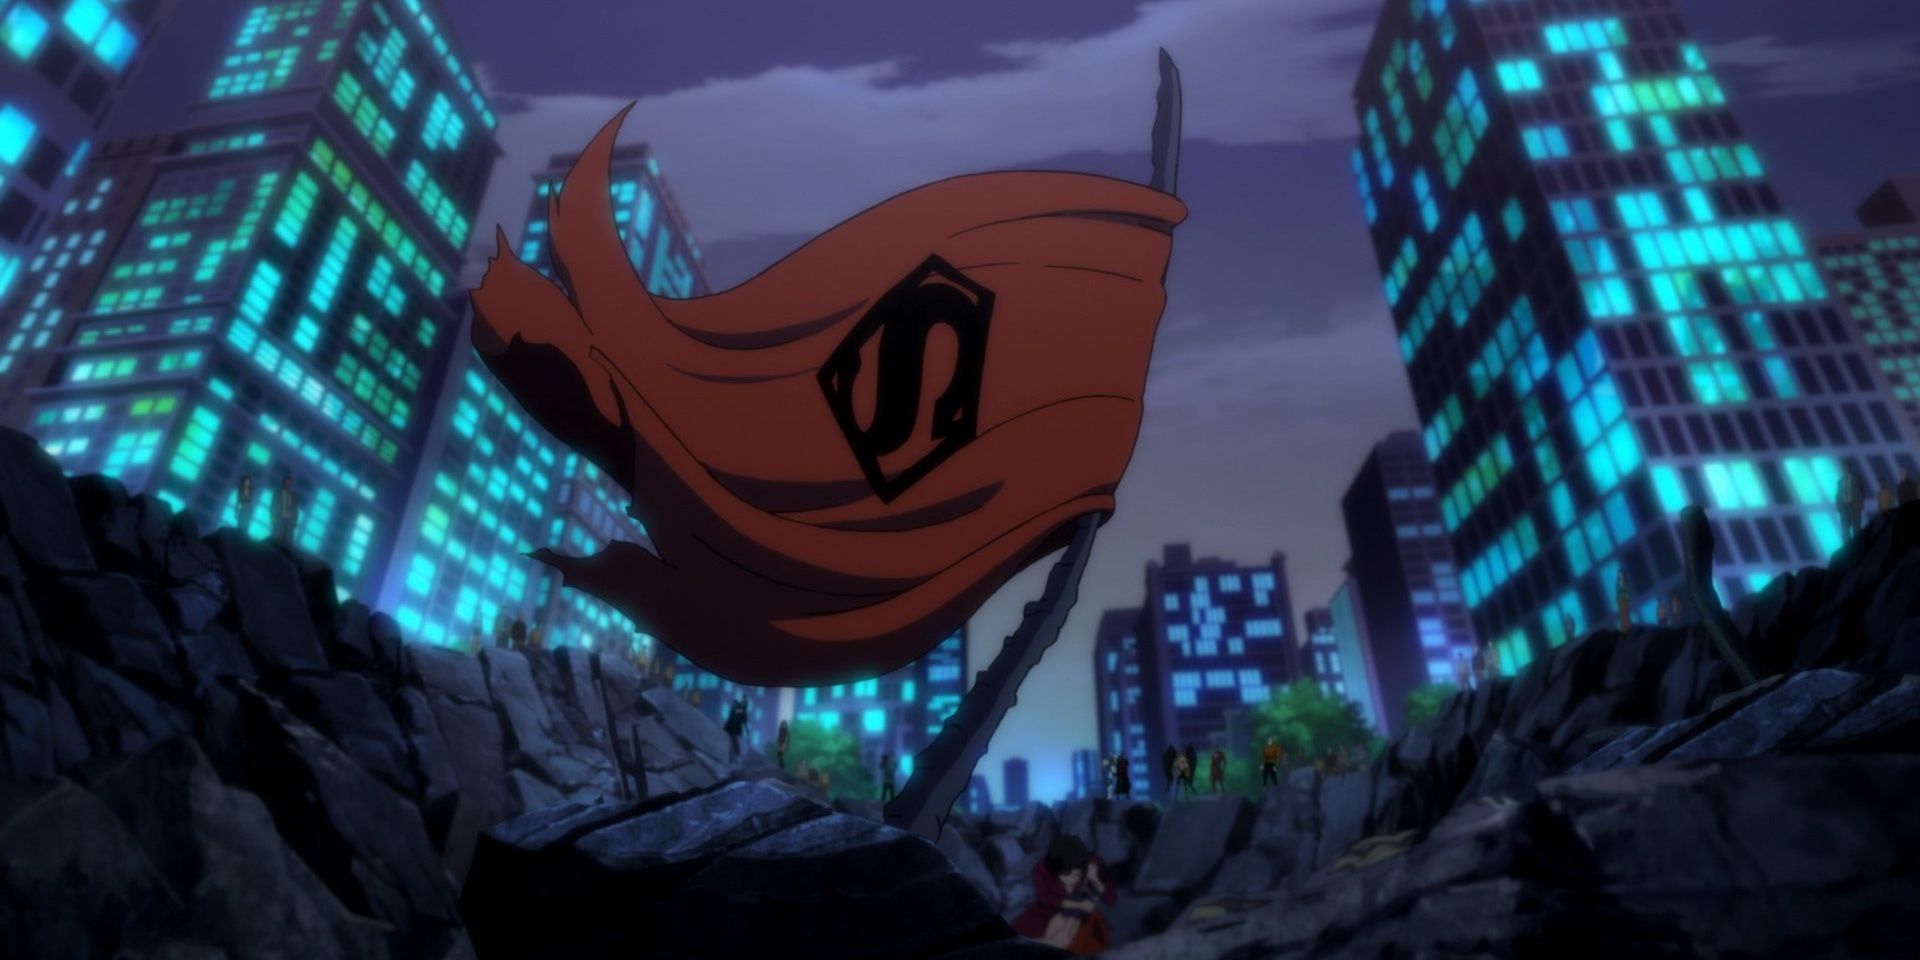 Лига справедливости собирается вокруг Лоис Лейн и умирающего Супермена в «Смерти Супермена».